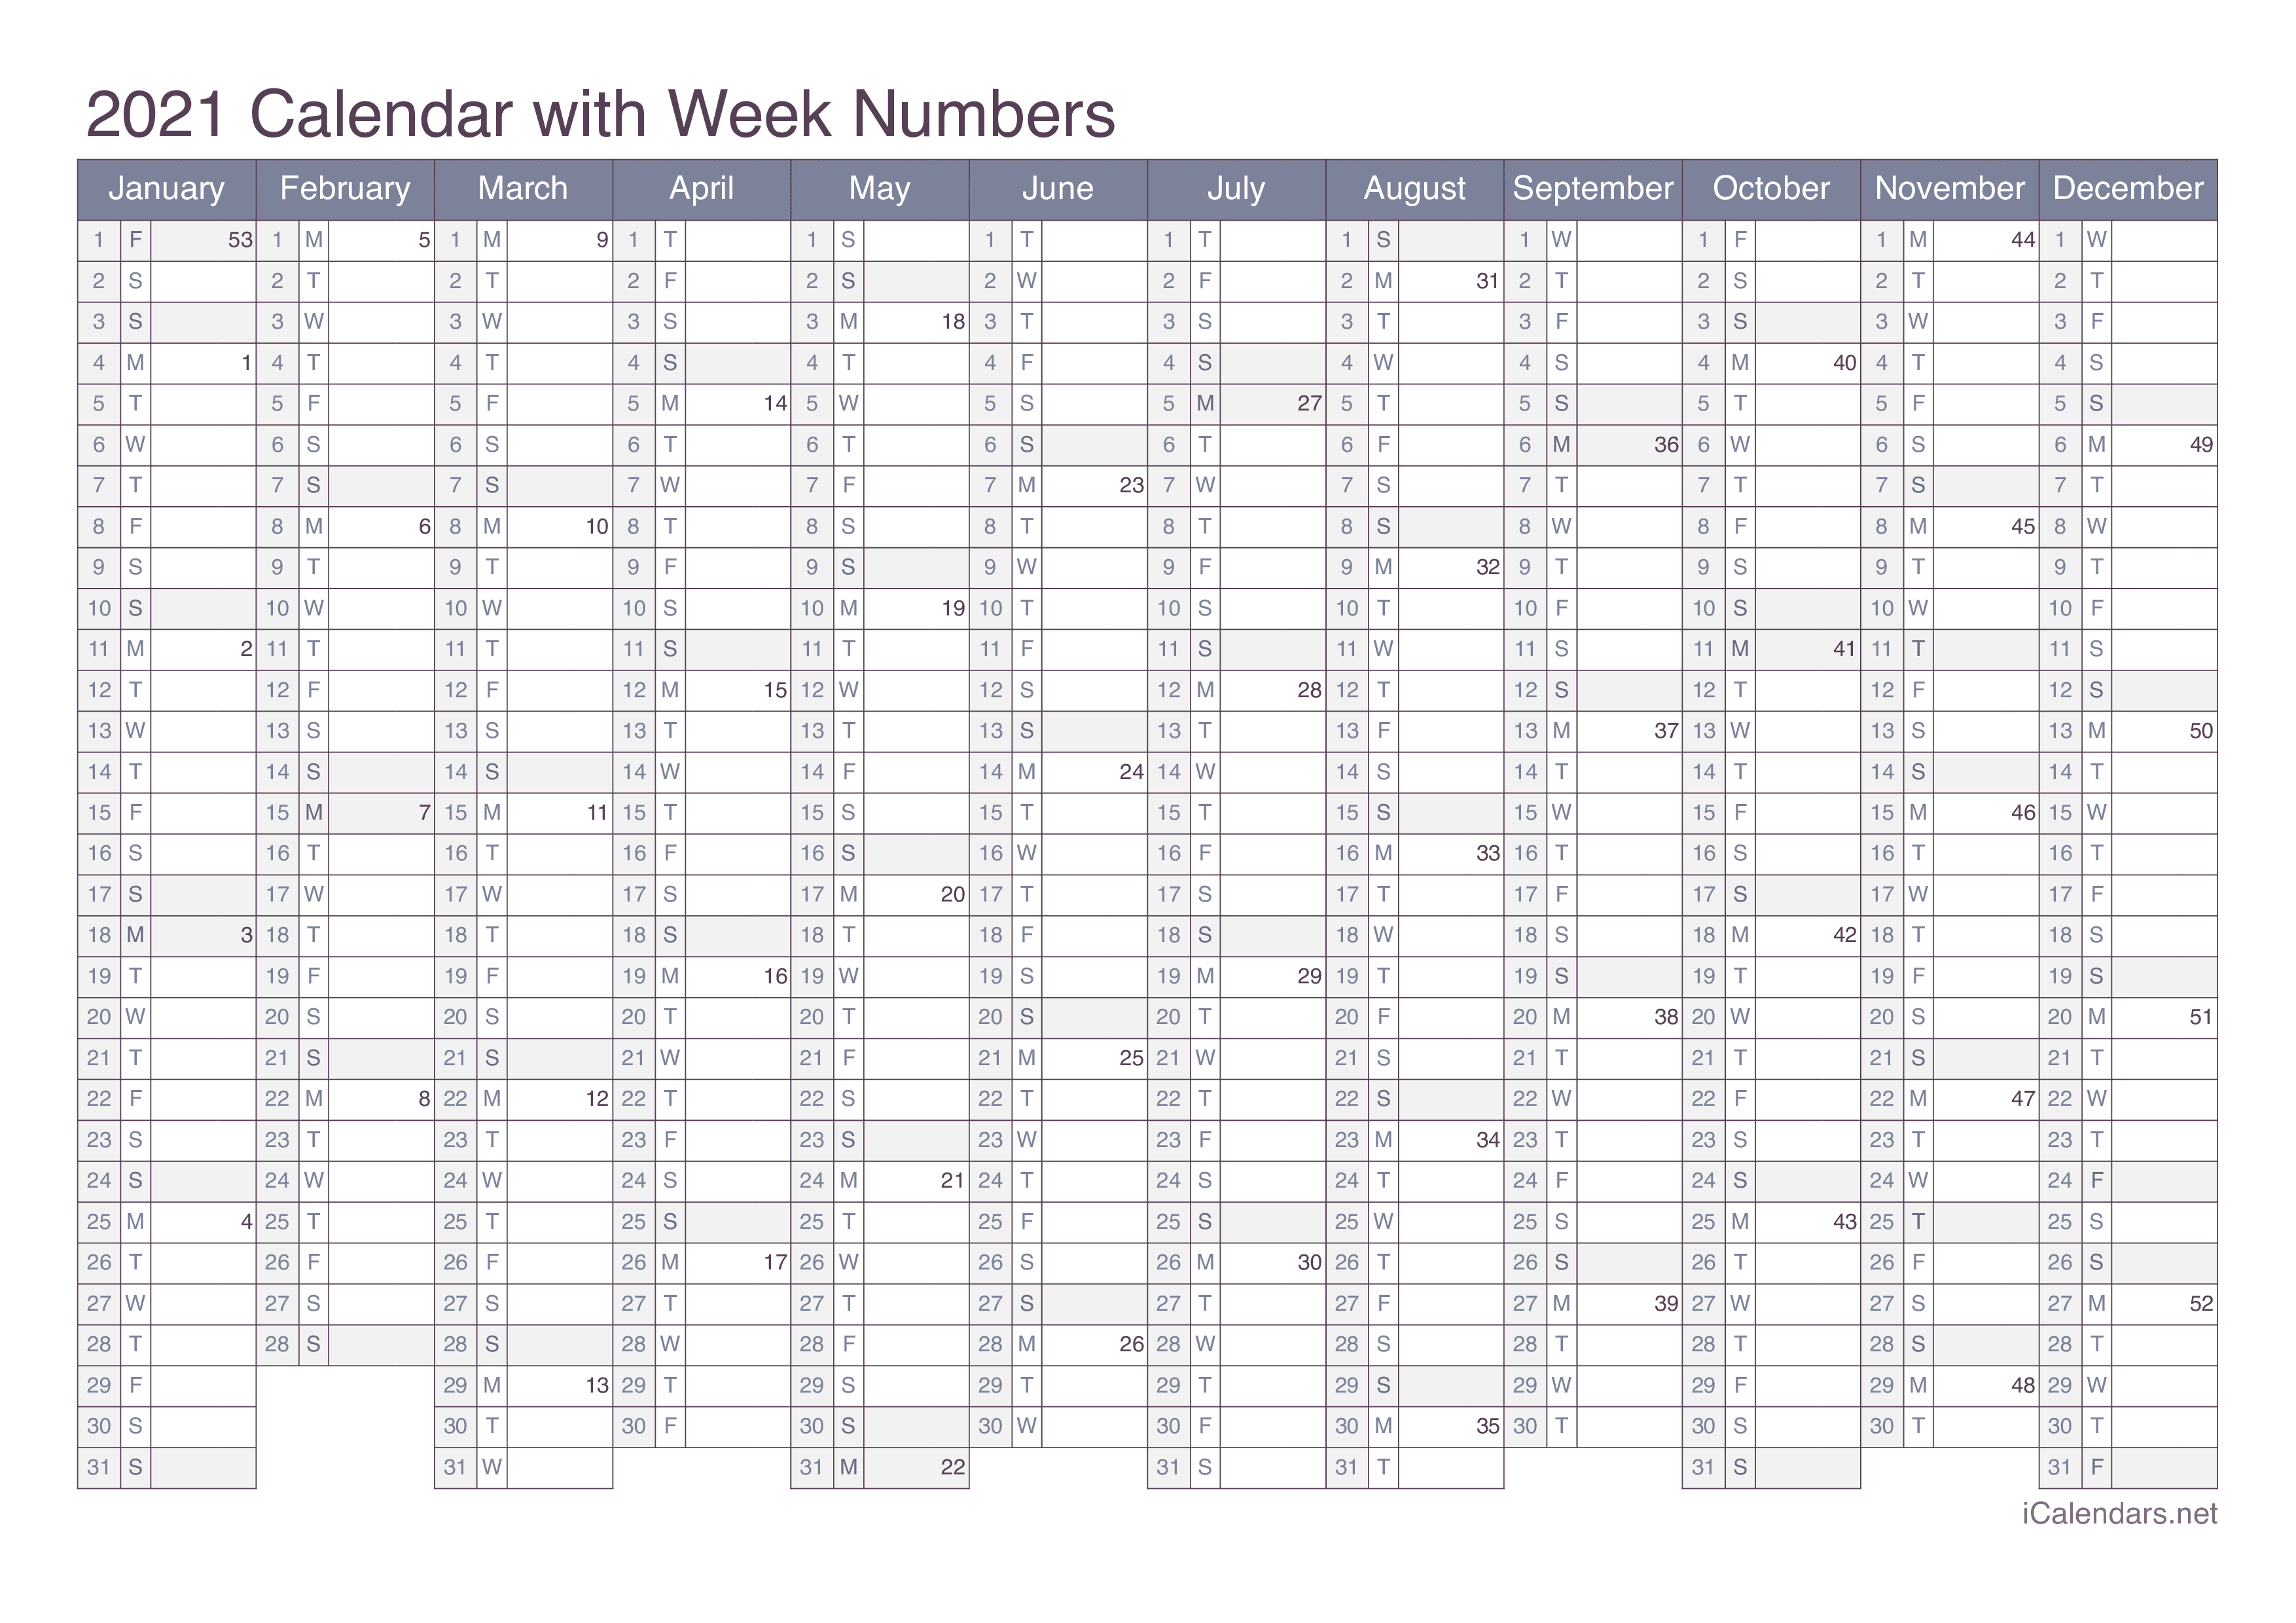 2021 Calendar with week numbers - Office